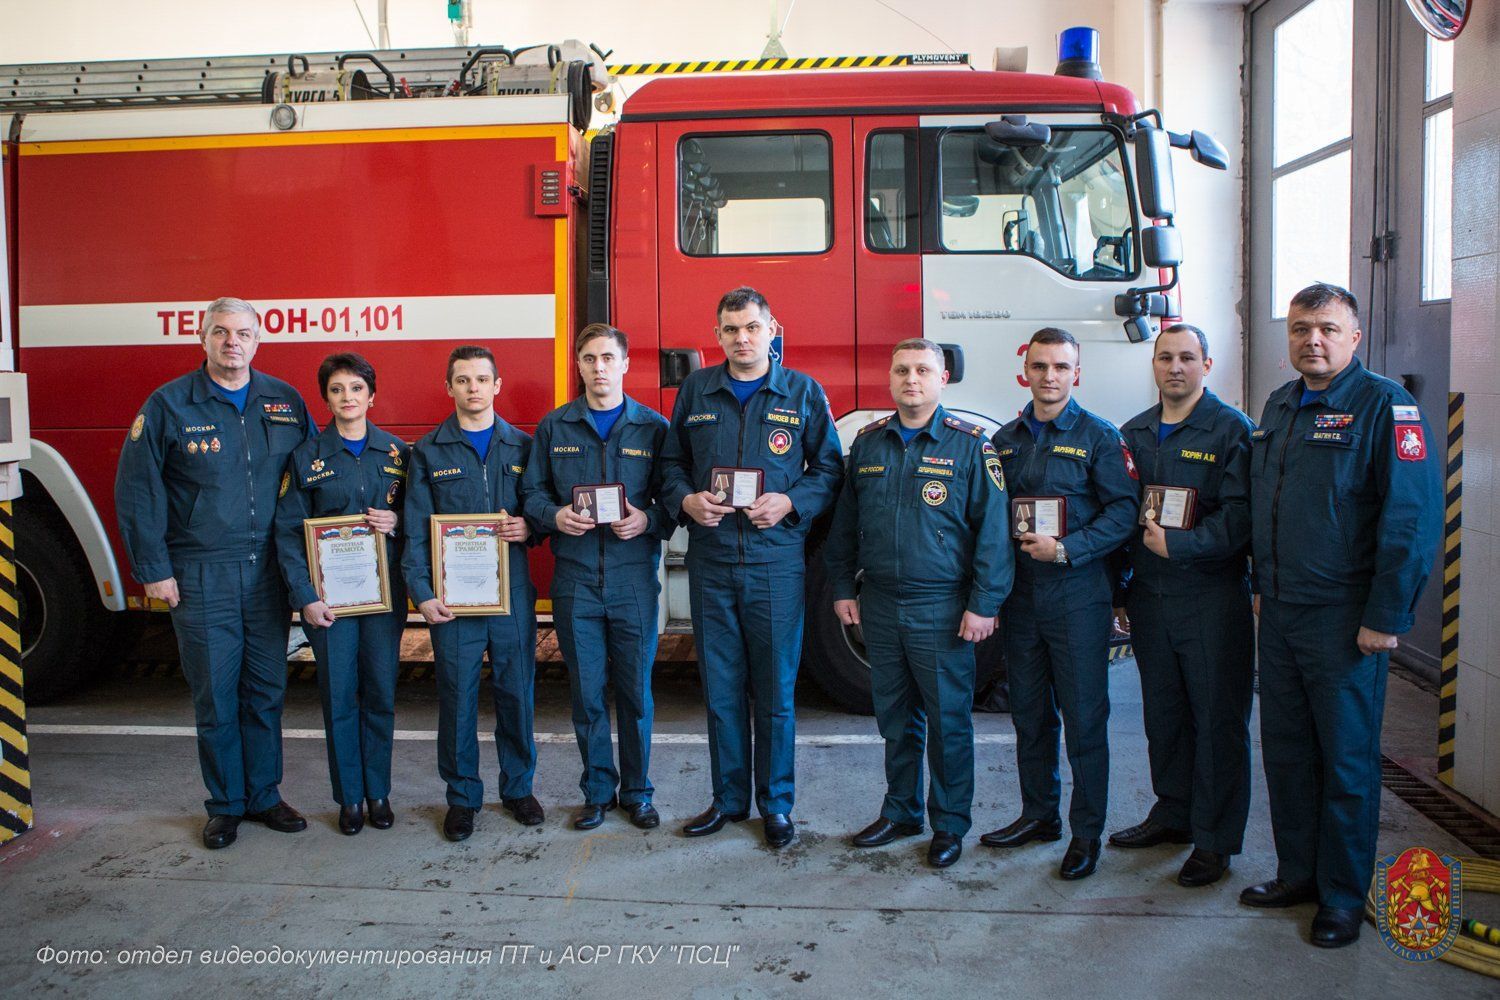 Сотрудников пожарно-спасательного отряда №301 наградили за спасение людей на пожаре